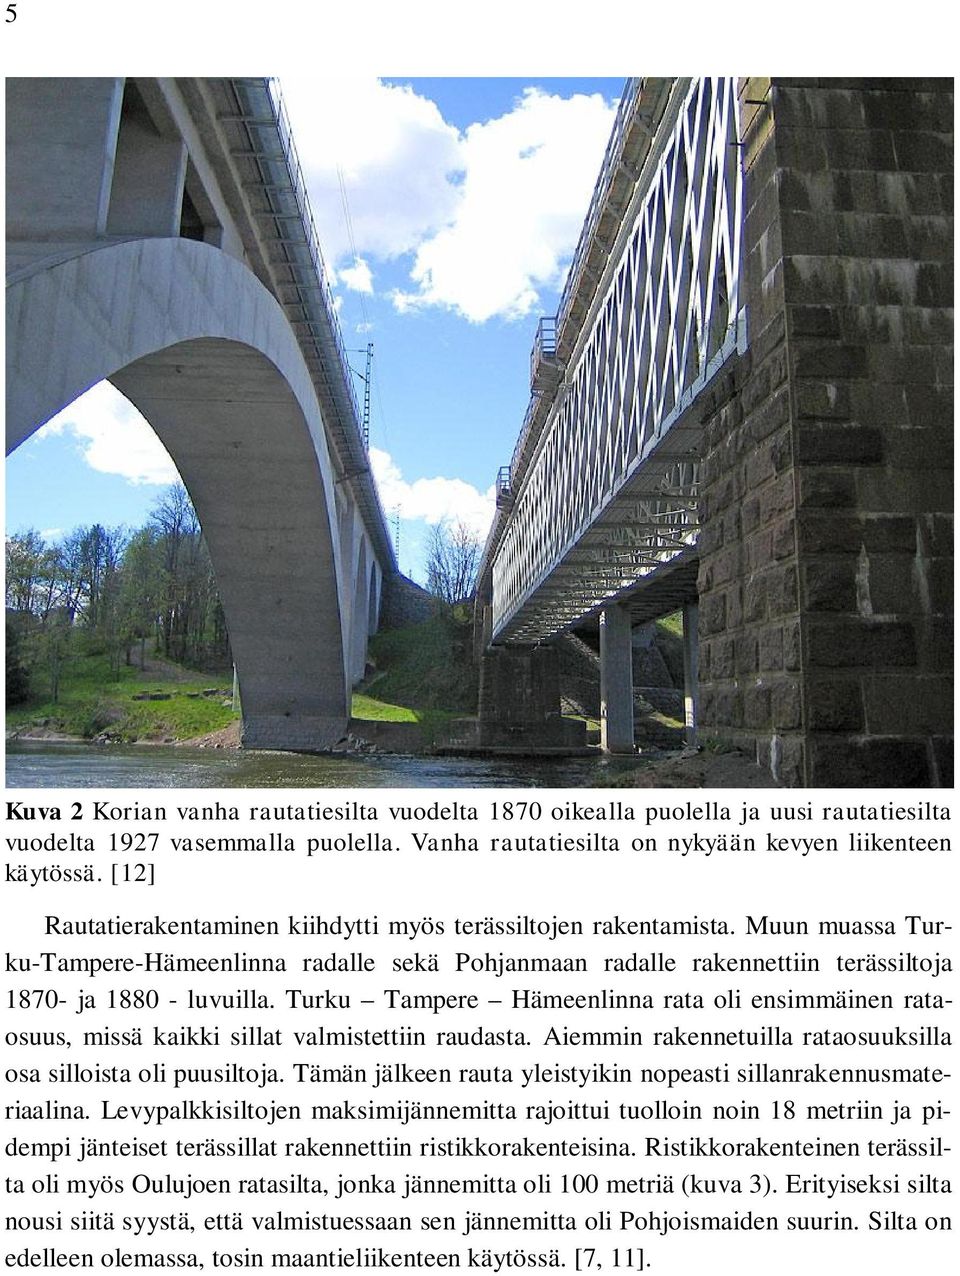 Turku Tampere Hämeenlinna rata oli ensimmäinen rataosuus, missä kaikki sillat valmistettiin raudasta. Aiemmin rakennetuilla rataosuuksilla osa silloista oli puusiltoja.